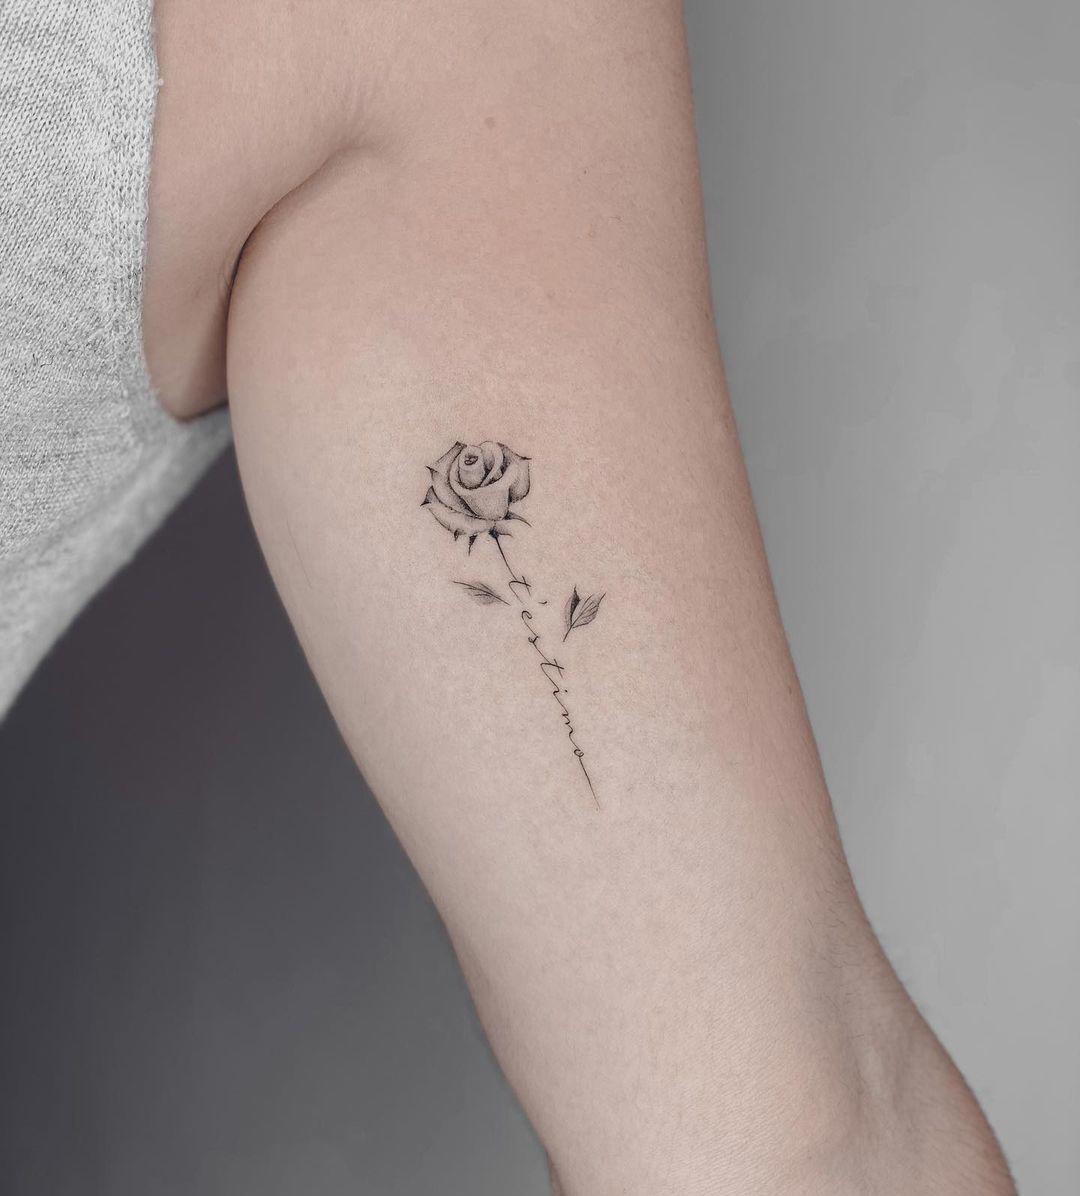 Tatuaje de flor y palabras en el antebrazo